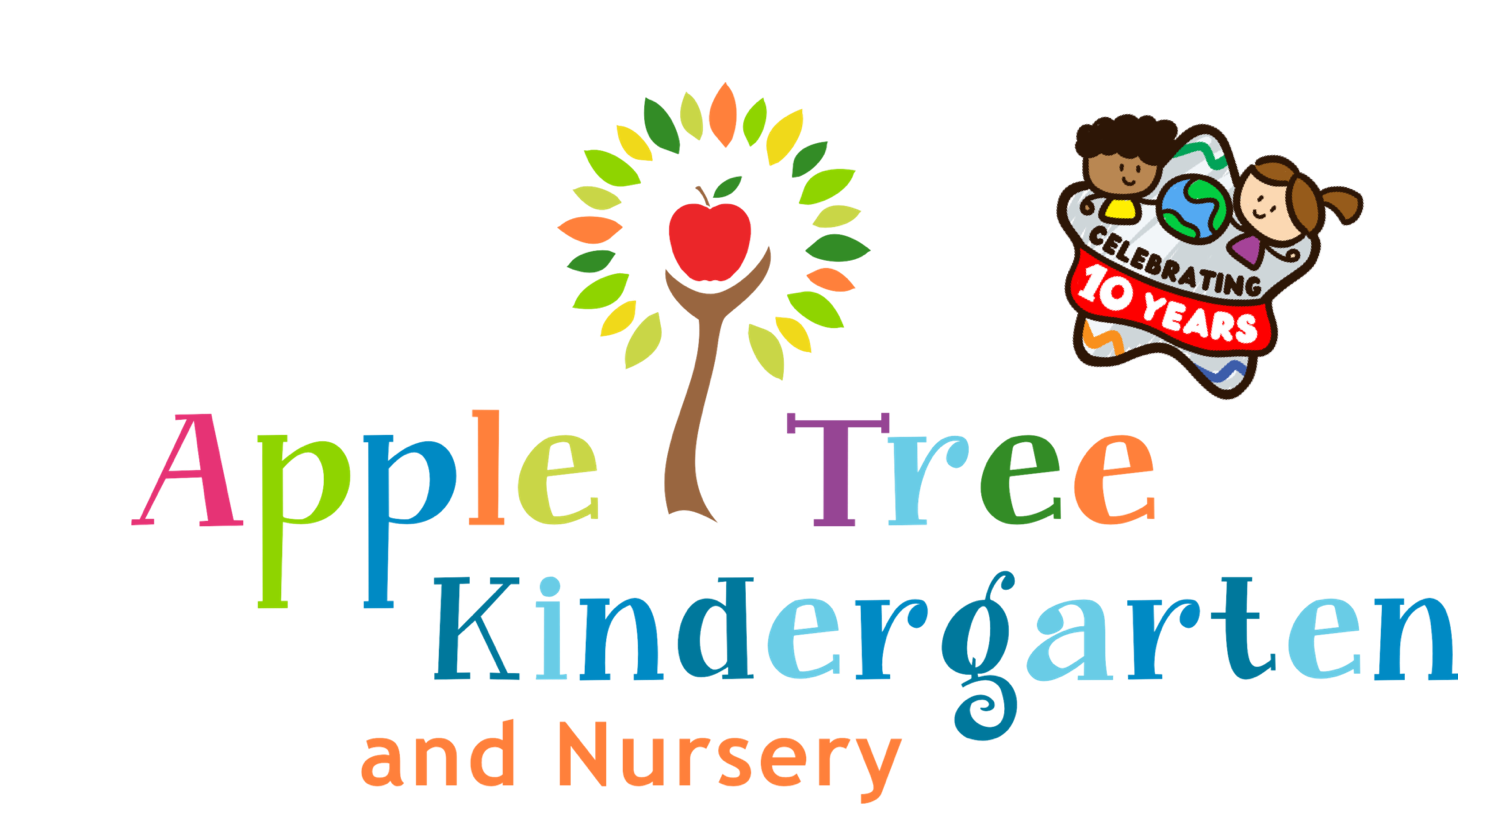 Apple Tree Kindergarten and Nursery